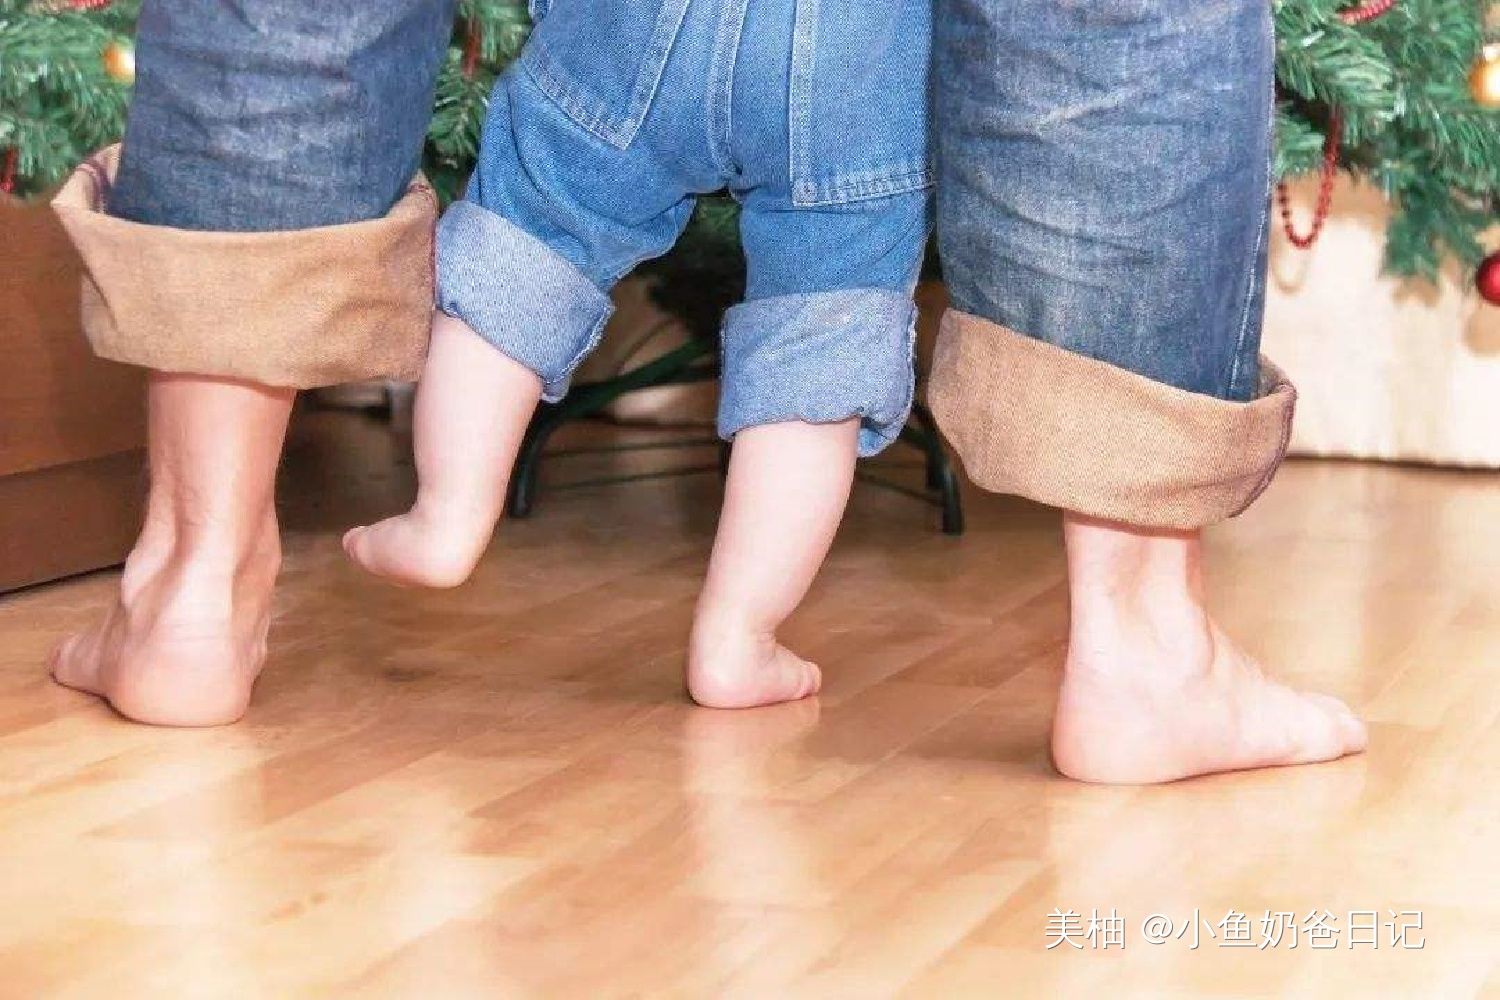 为何大多数宝宝都不爱穿袜子？宝宝的“脱袜癖好”，有心理需求